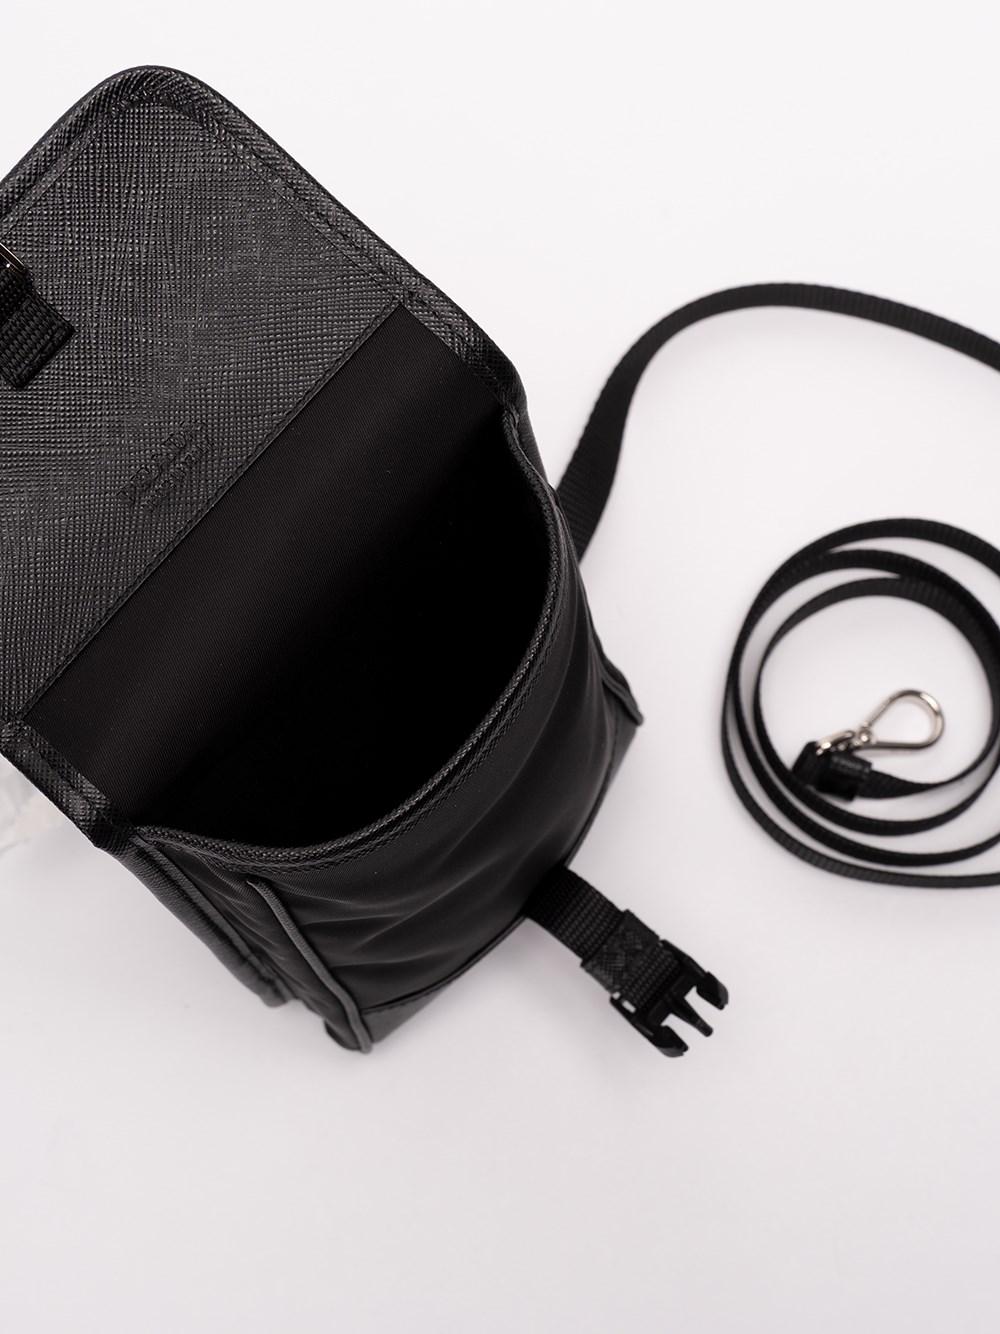 Prada Black Re-Nylon & Saffiano Leather Smartphone Case